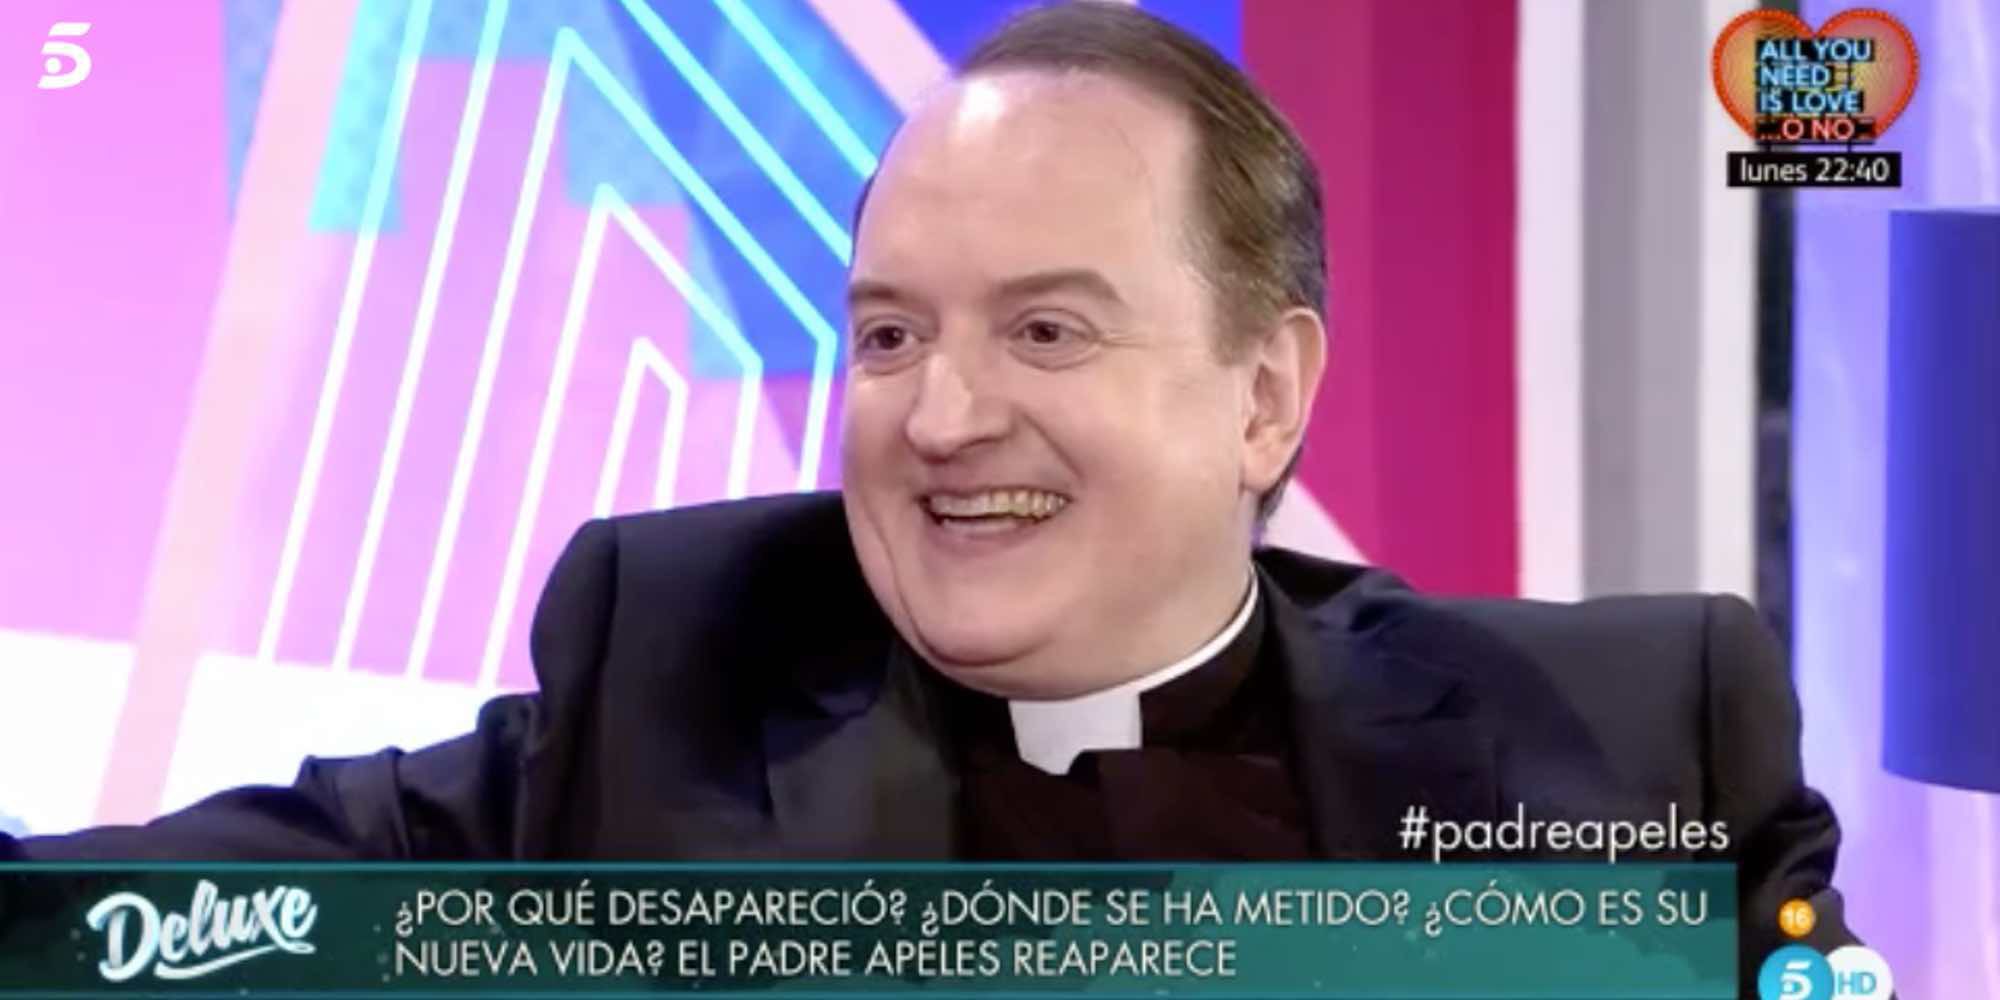 El Padre Apeles reaparece en televisión presentando su nueva vida: "Nunca hablo de sexo, dinero y años"